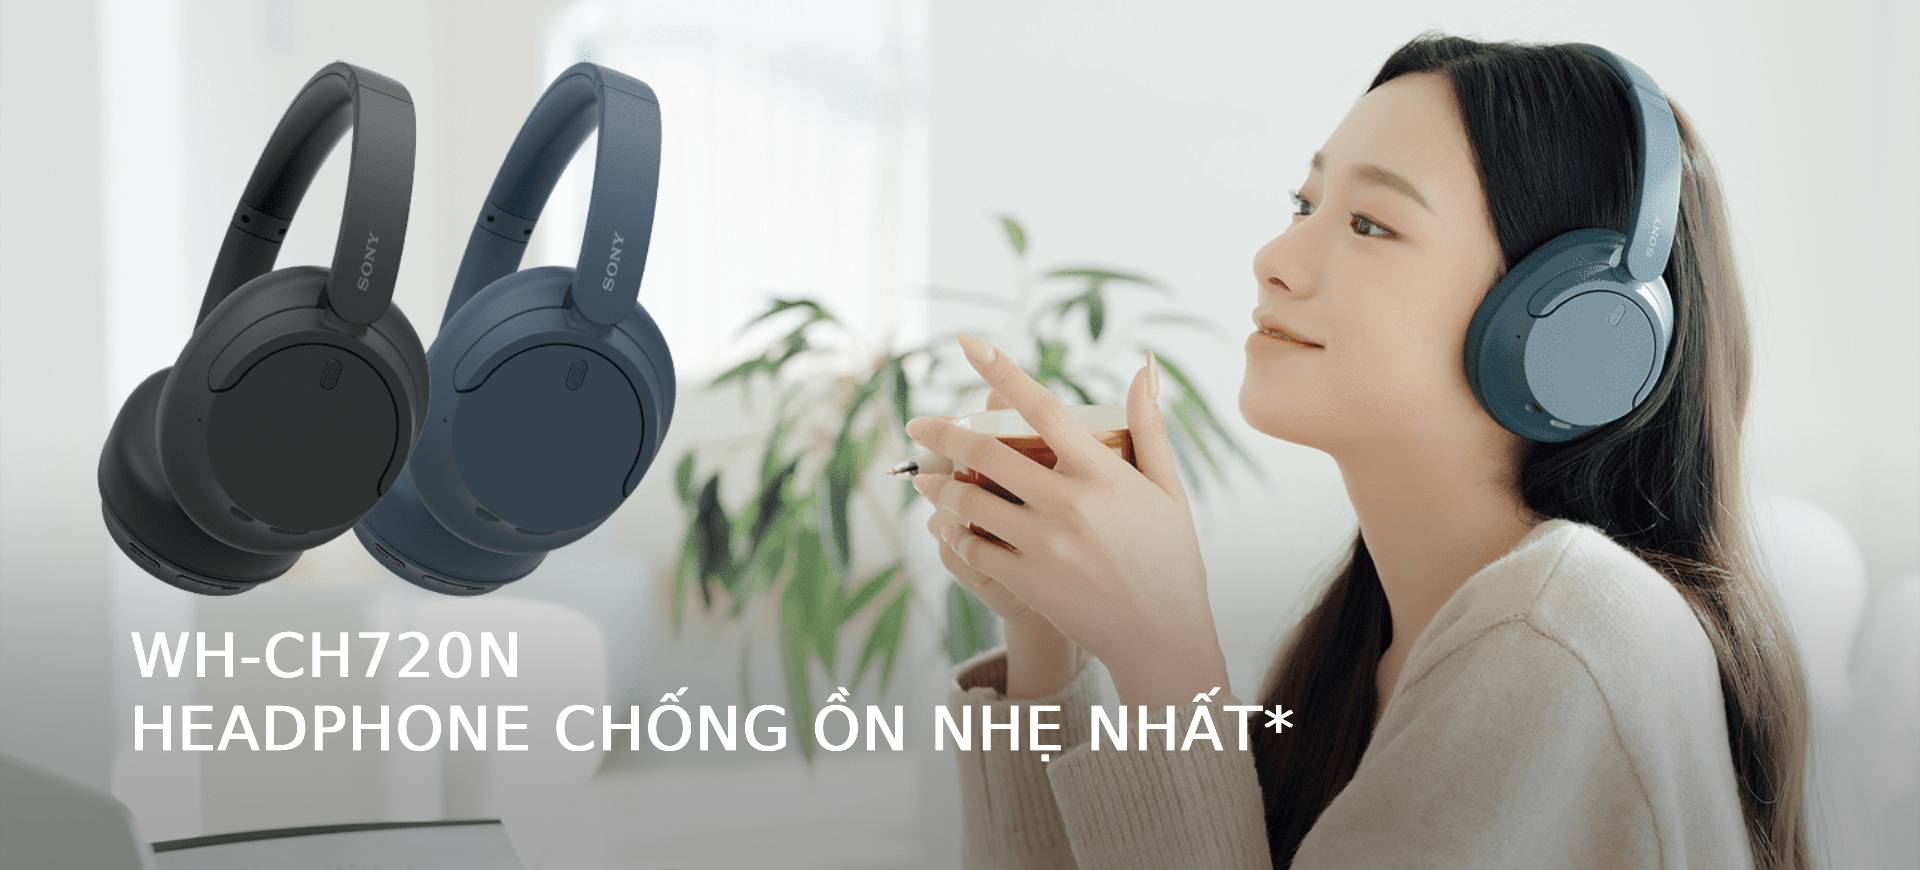 Headphone chống ồn nhẹ nhất WH-CH720N